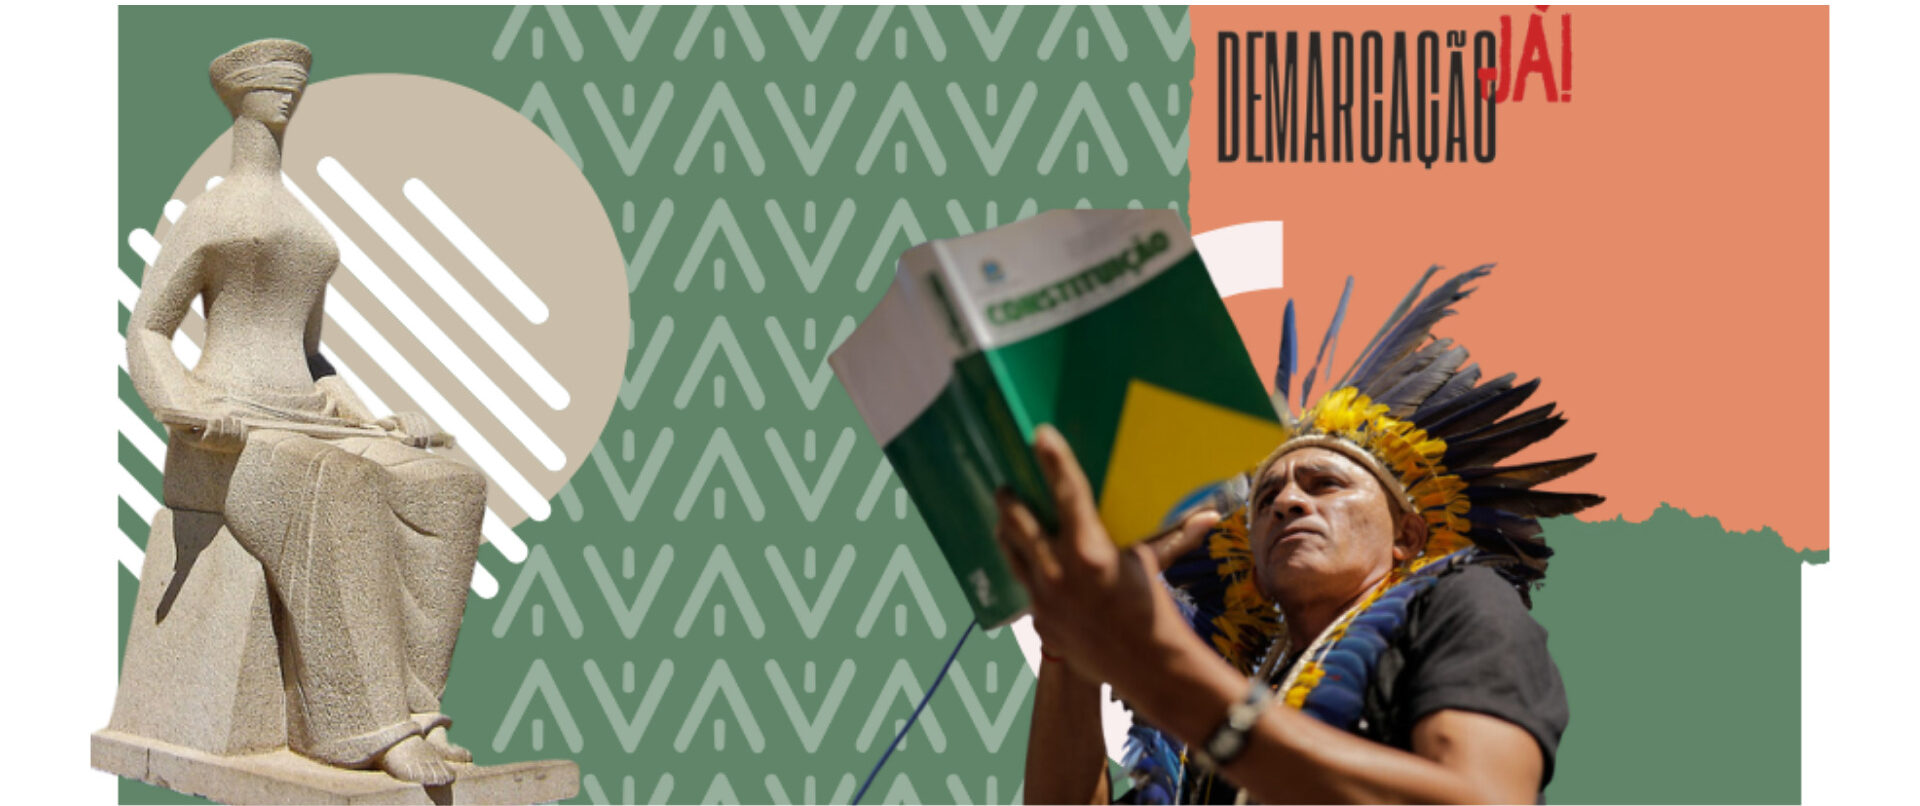 Direitos dos povos tradicionais e o Judiciário brasileiro